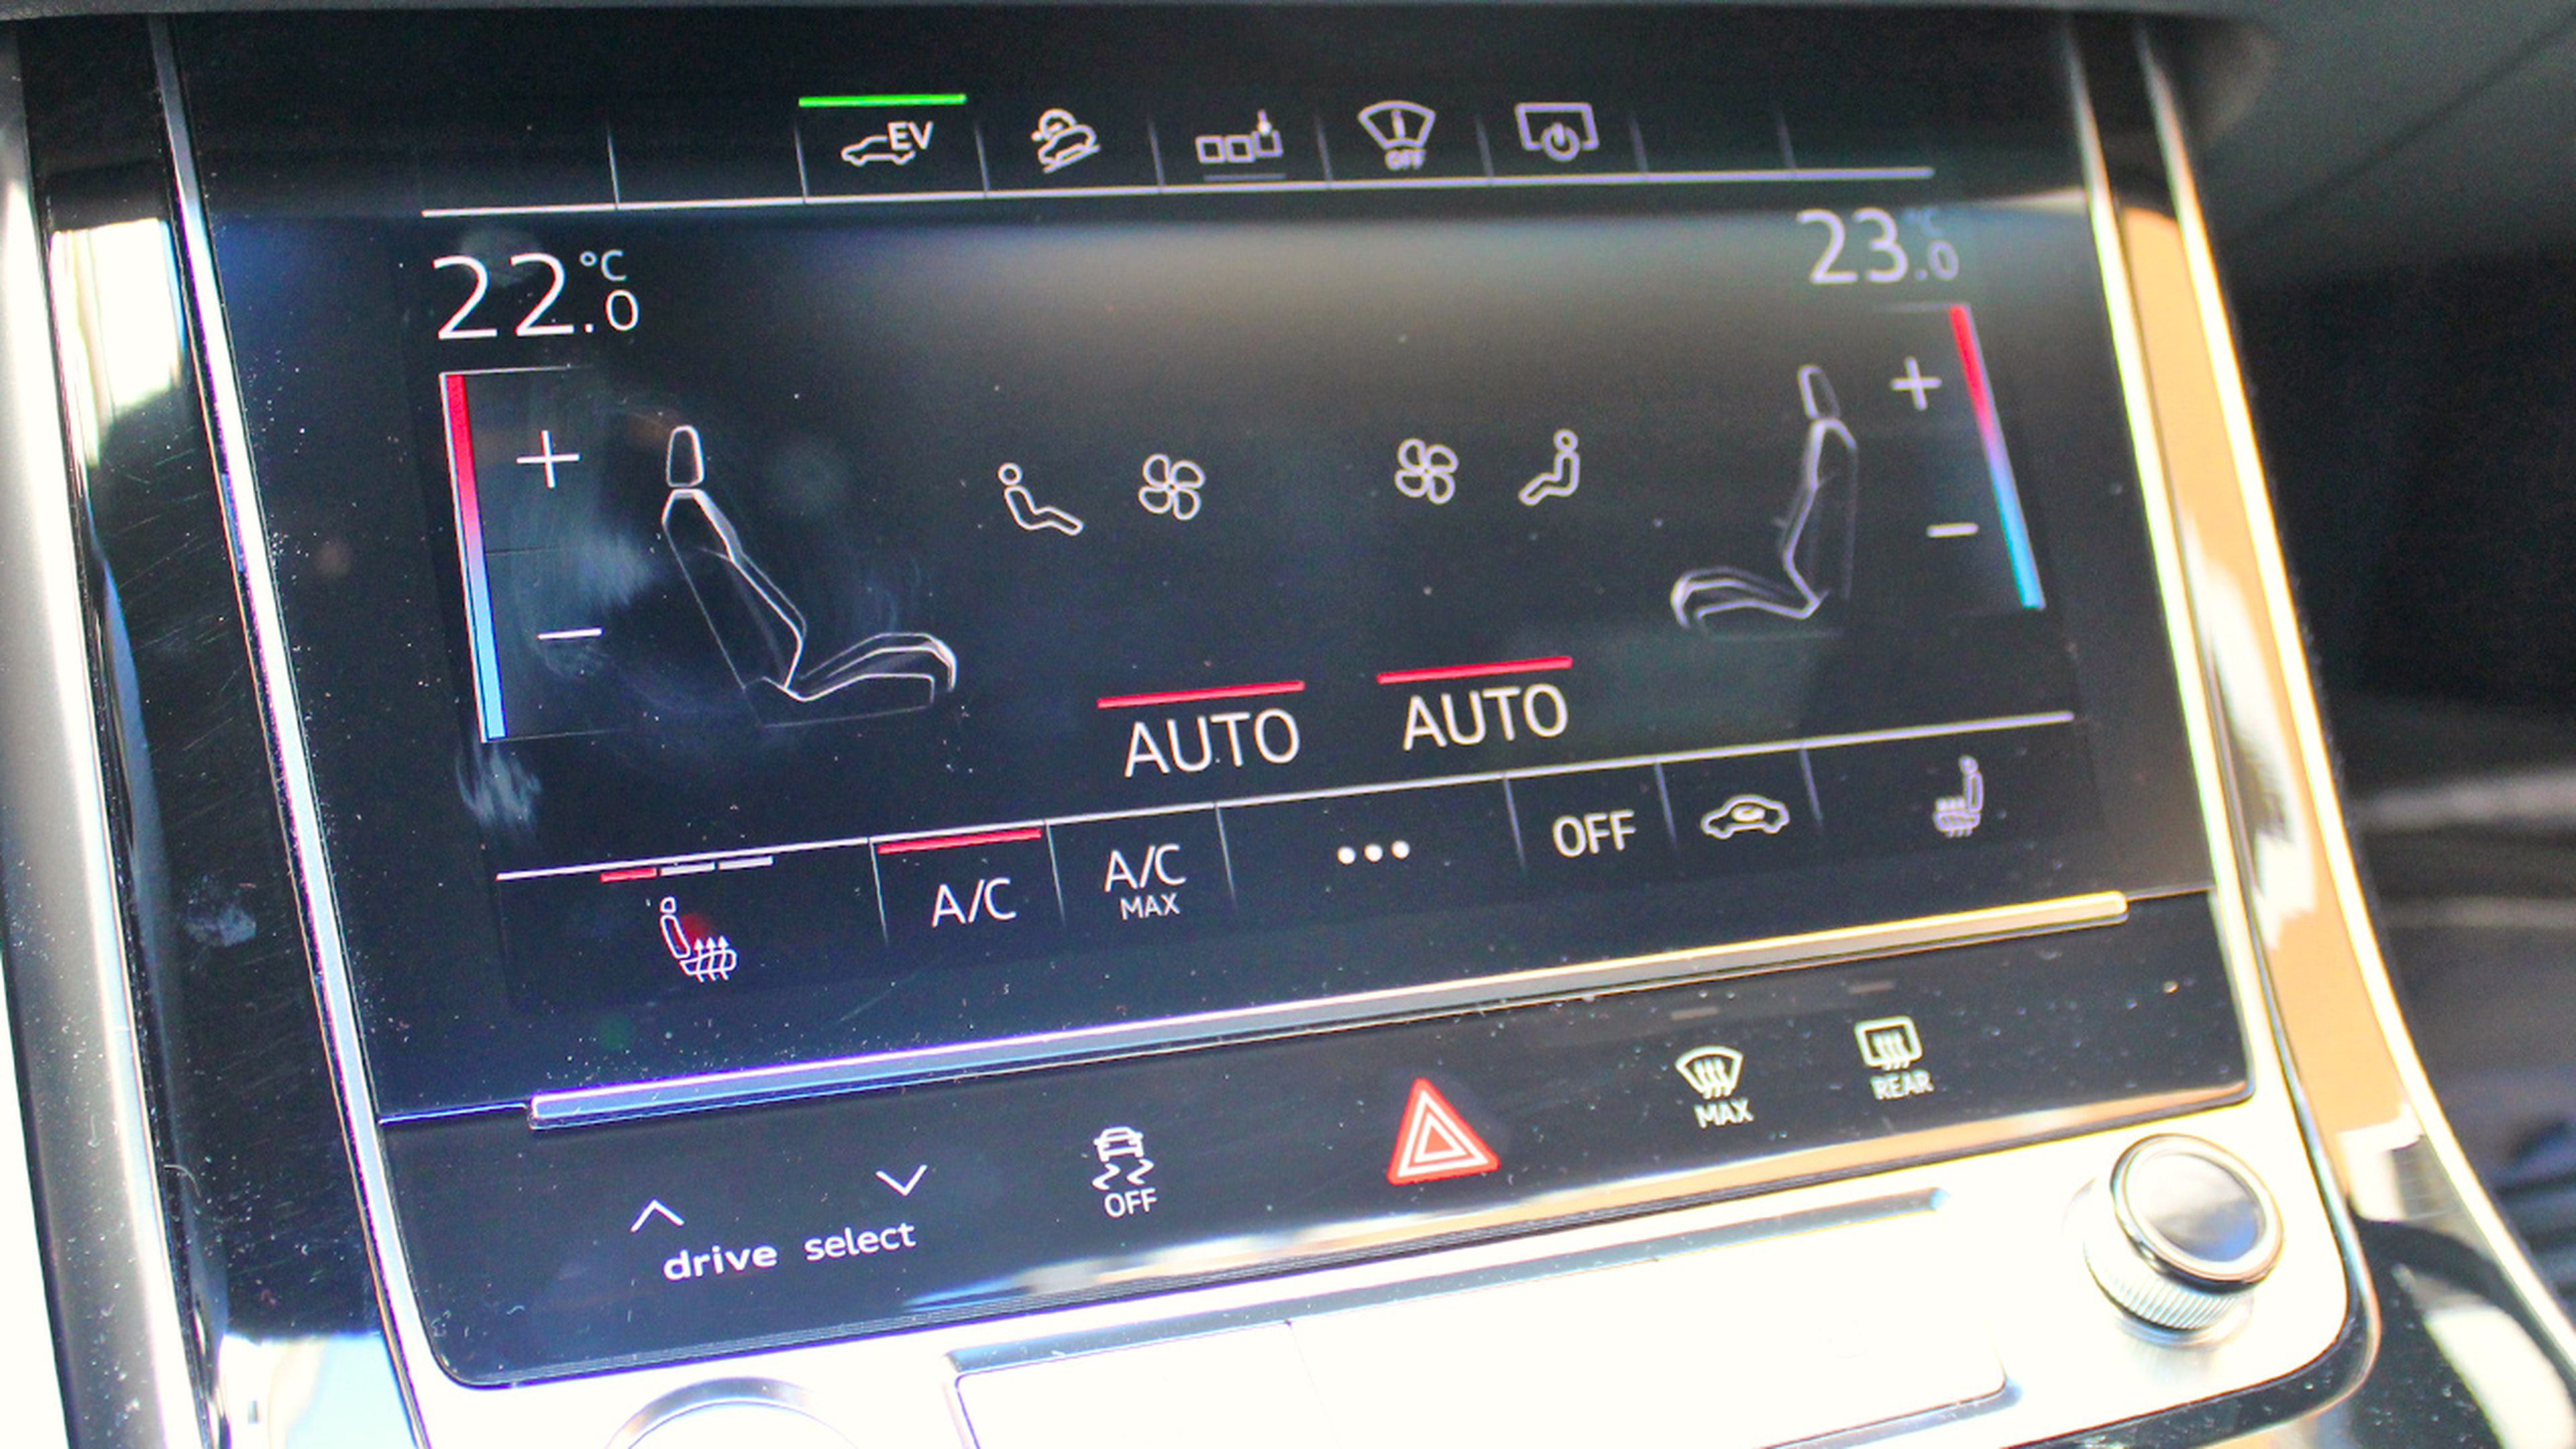 Climatizador Audi Q7, aire acondicinoado